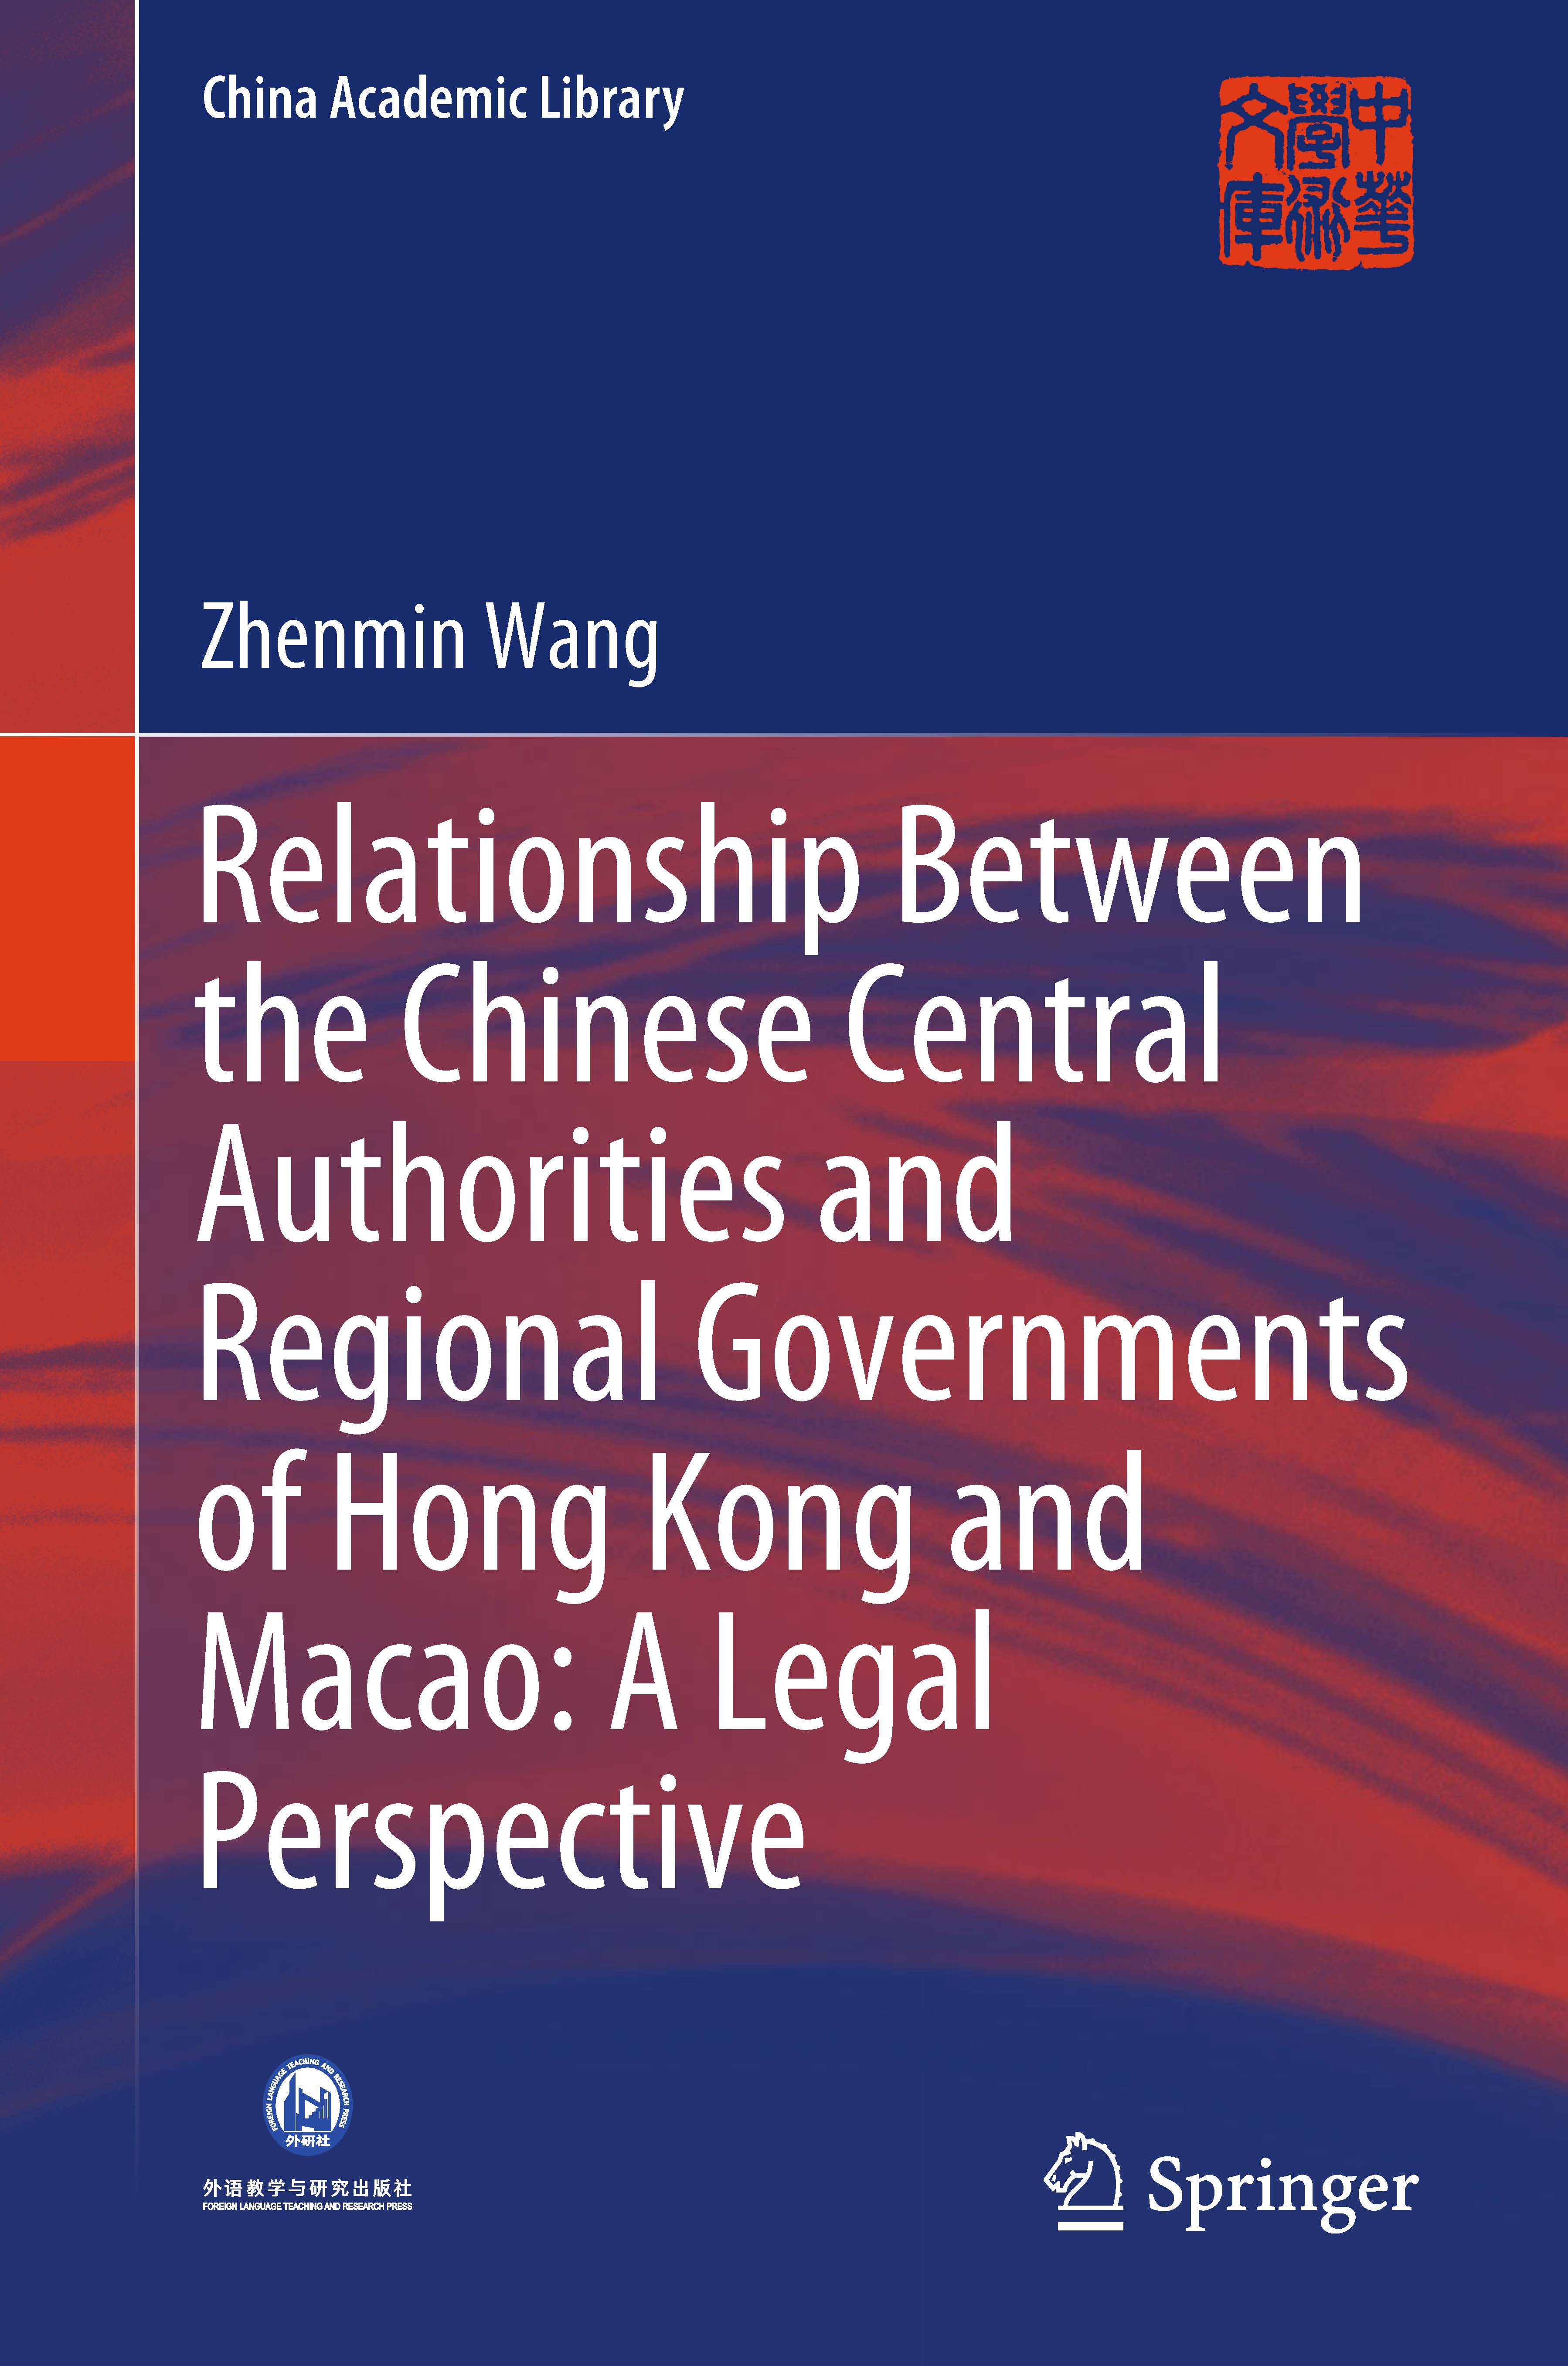 页面提取自－2019_Book_Relationship Between the Chinese Centra.jpg